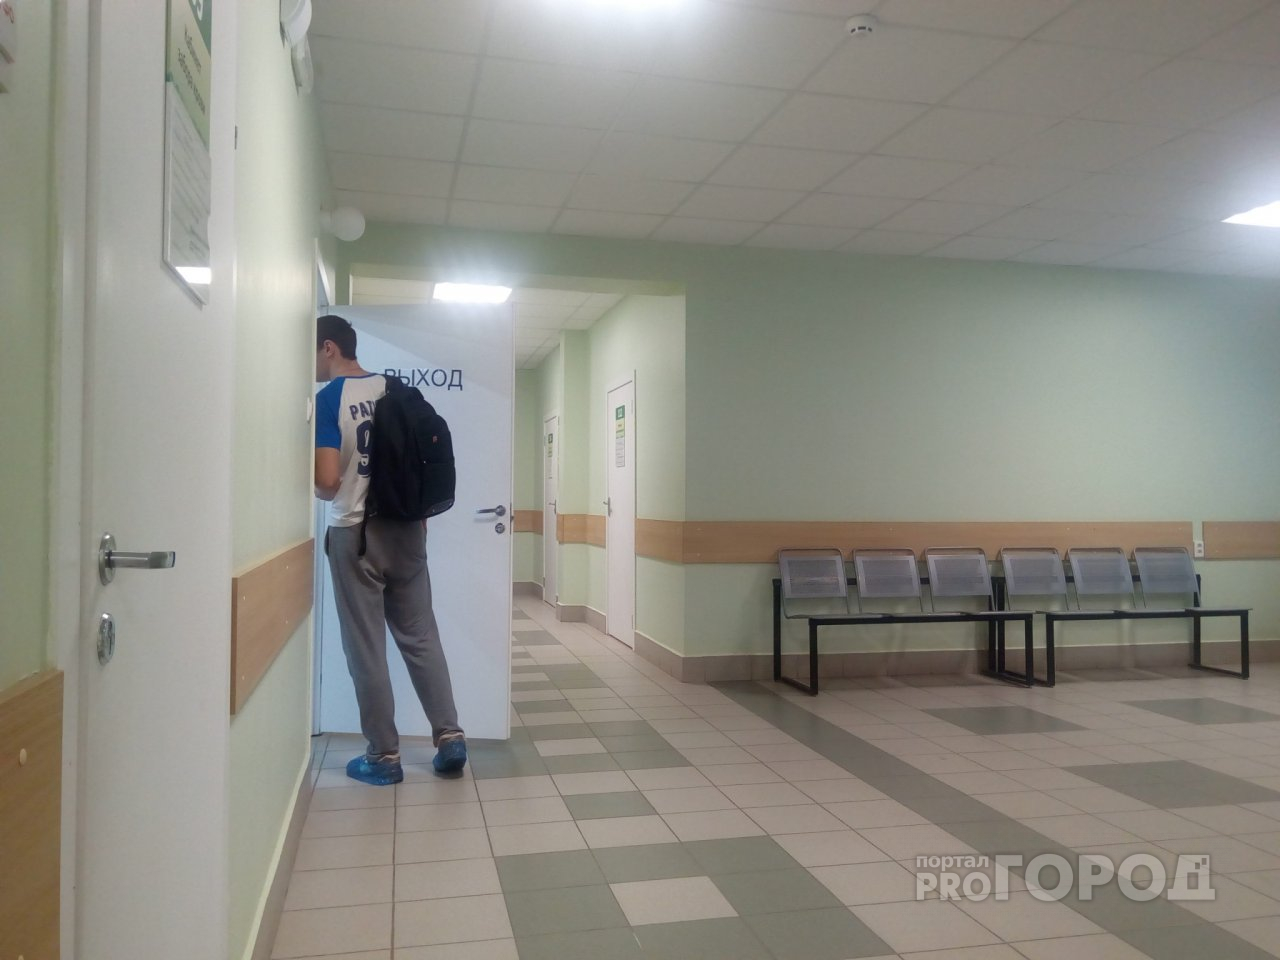 Врач онкологической больницы Ярославля получил 1,4 миллиона рублей от фармкомпаний